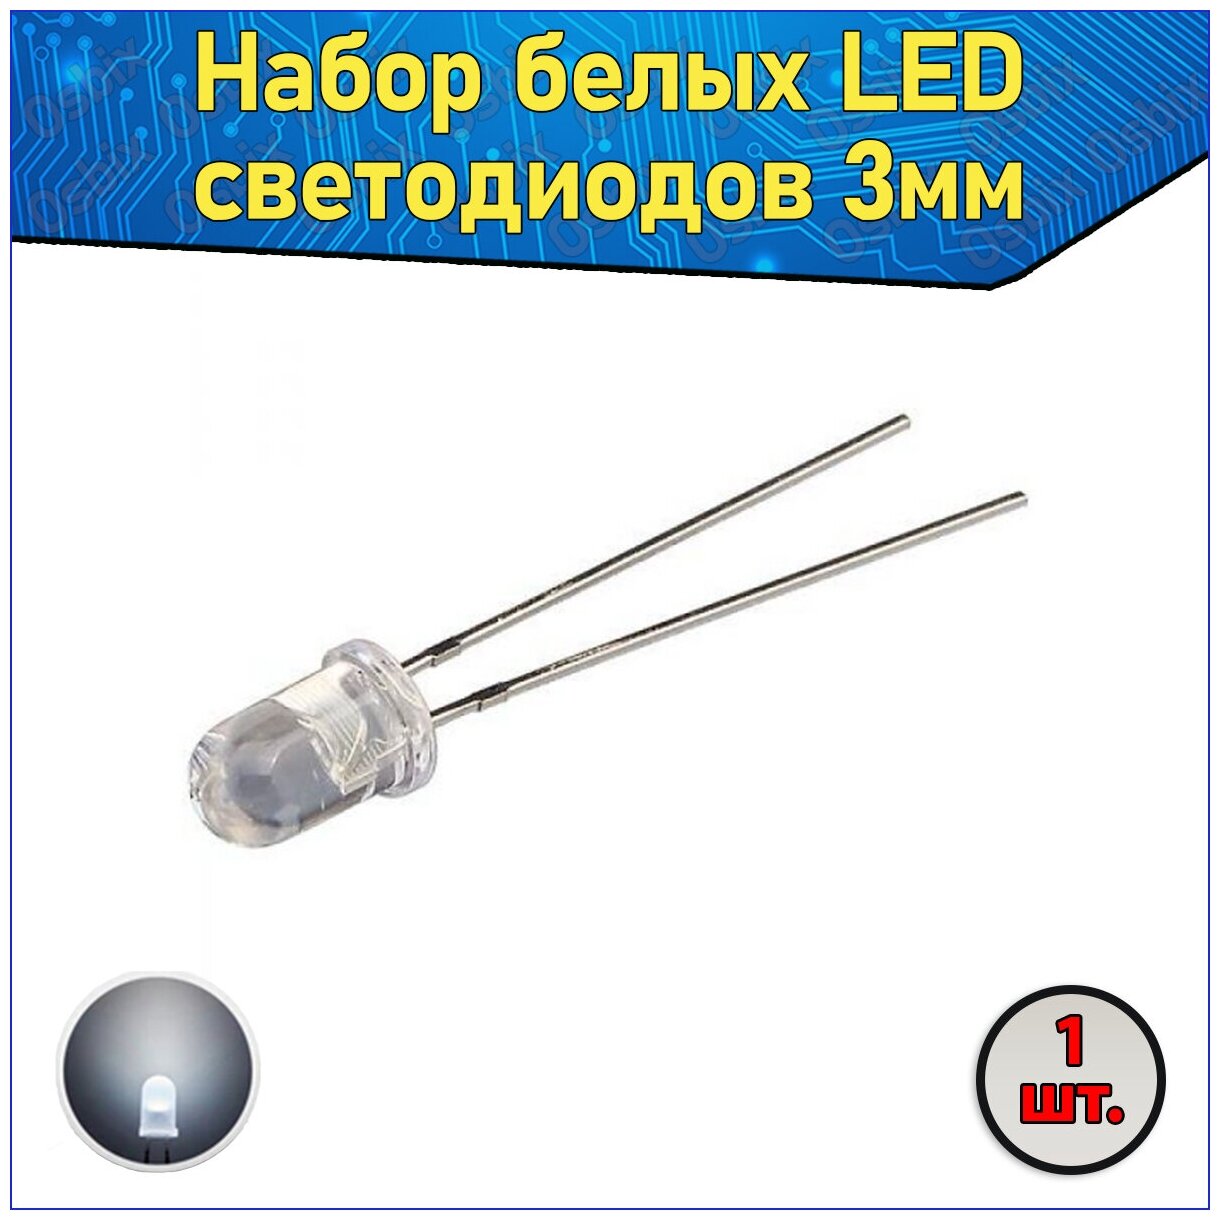 Набор белых LED светодиодов 3мм 1 шт. с короткими ножками & Комплект прозрачных F3 LED diode